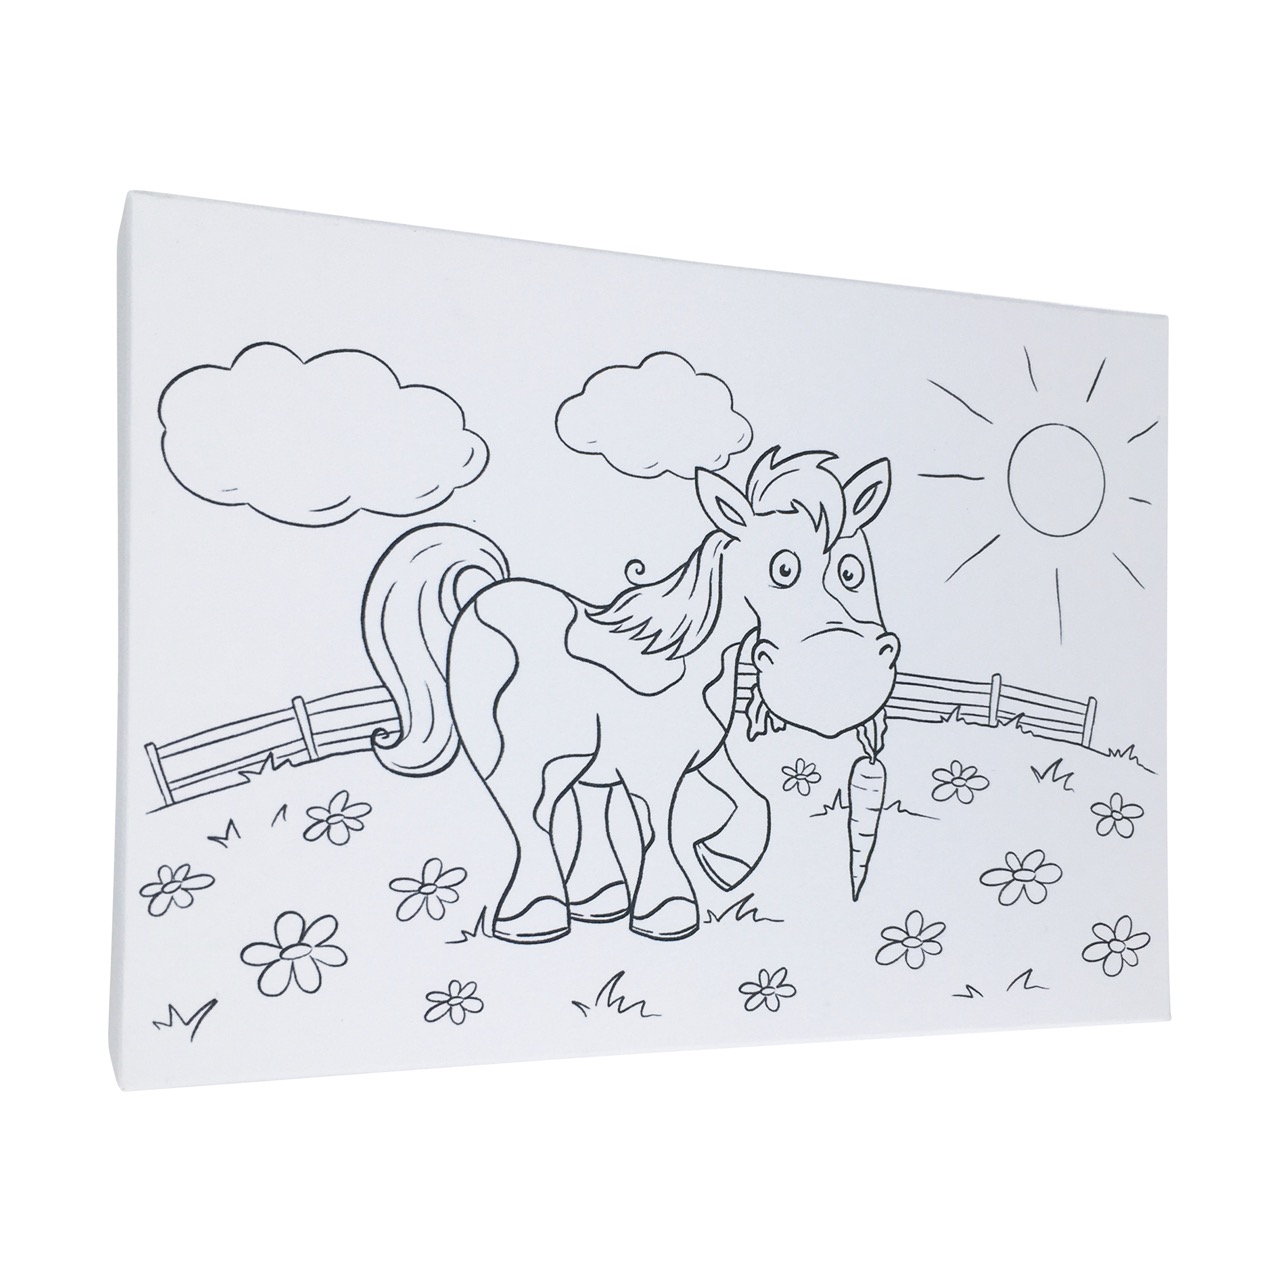 Buntbox Frame M toile en carton  (21 cm x 14.8 cm) avec cheval sur paddock à colorier